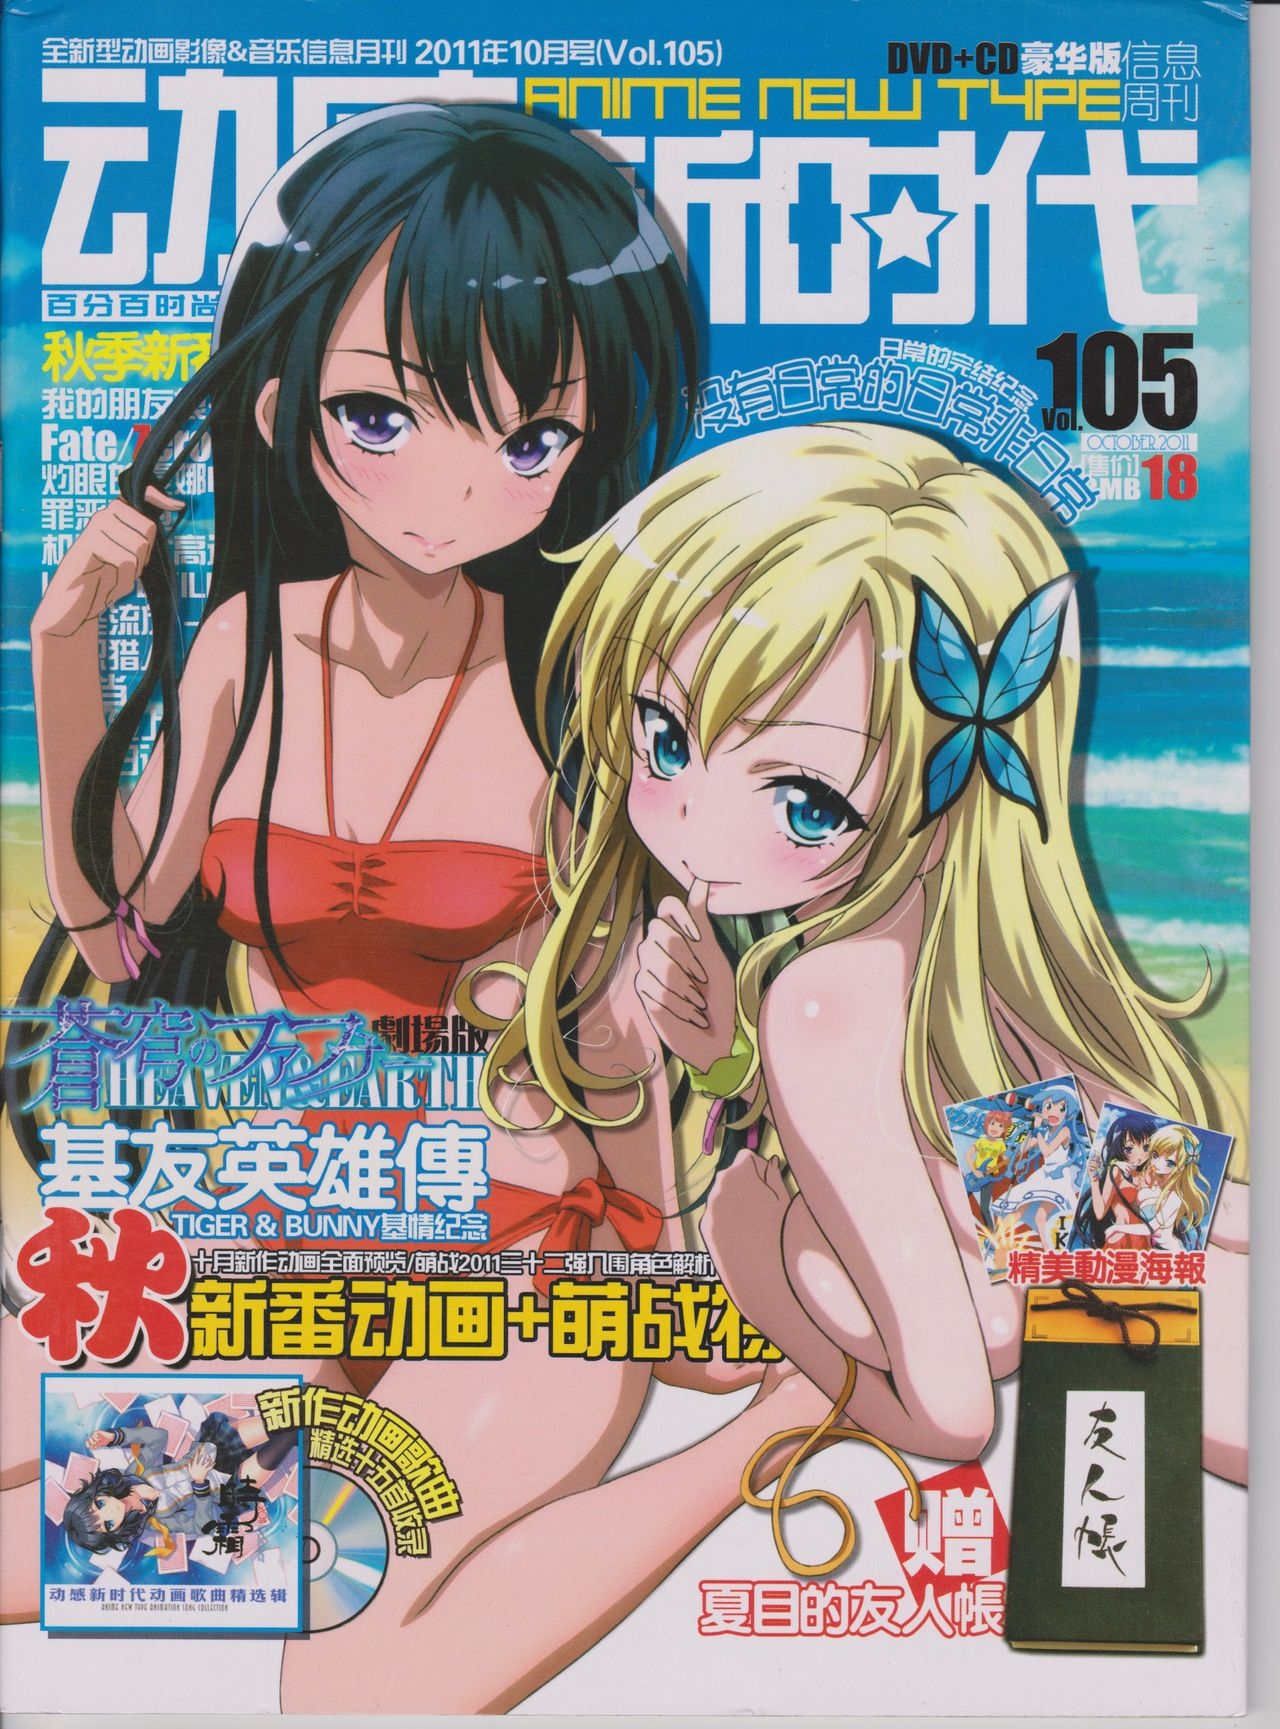 Anime New Type Vol.105 0